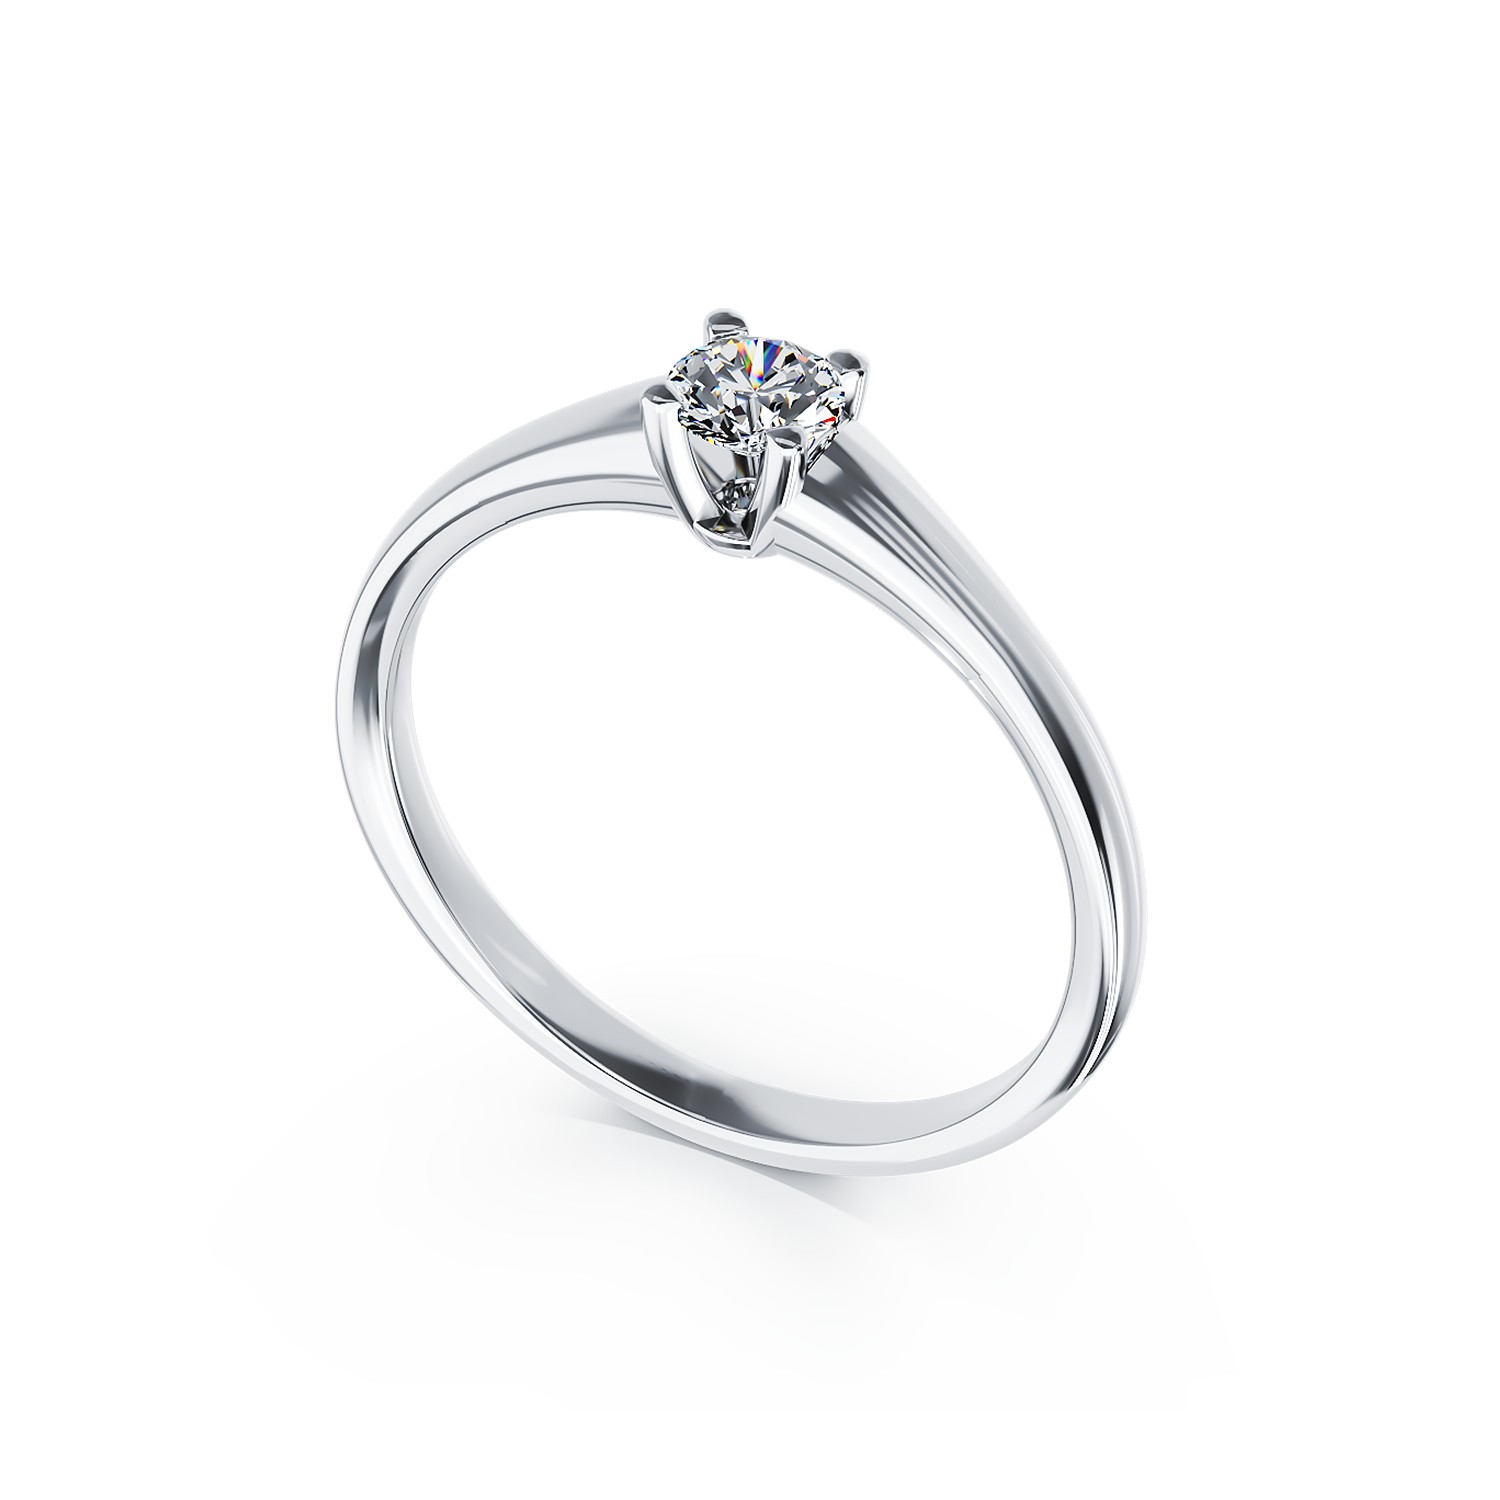 Inel de logodna din aur alb de 18K cu un diamant solitaire de 0.205ct